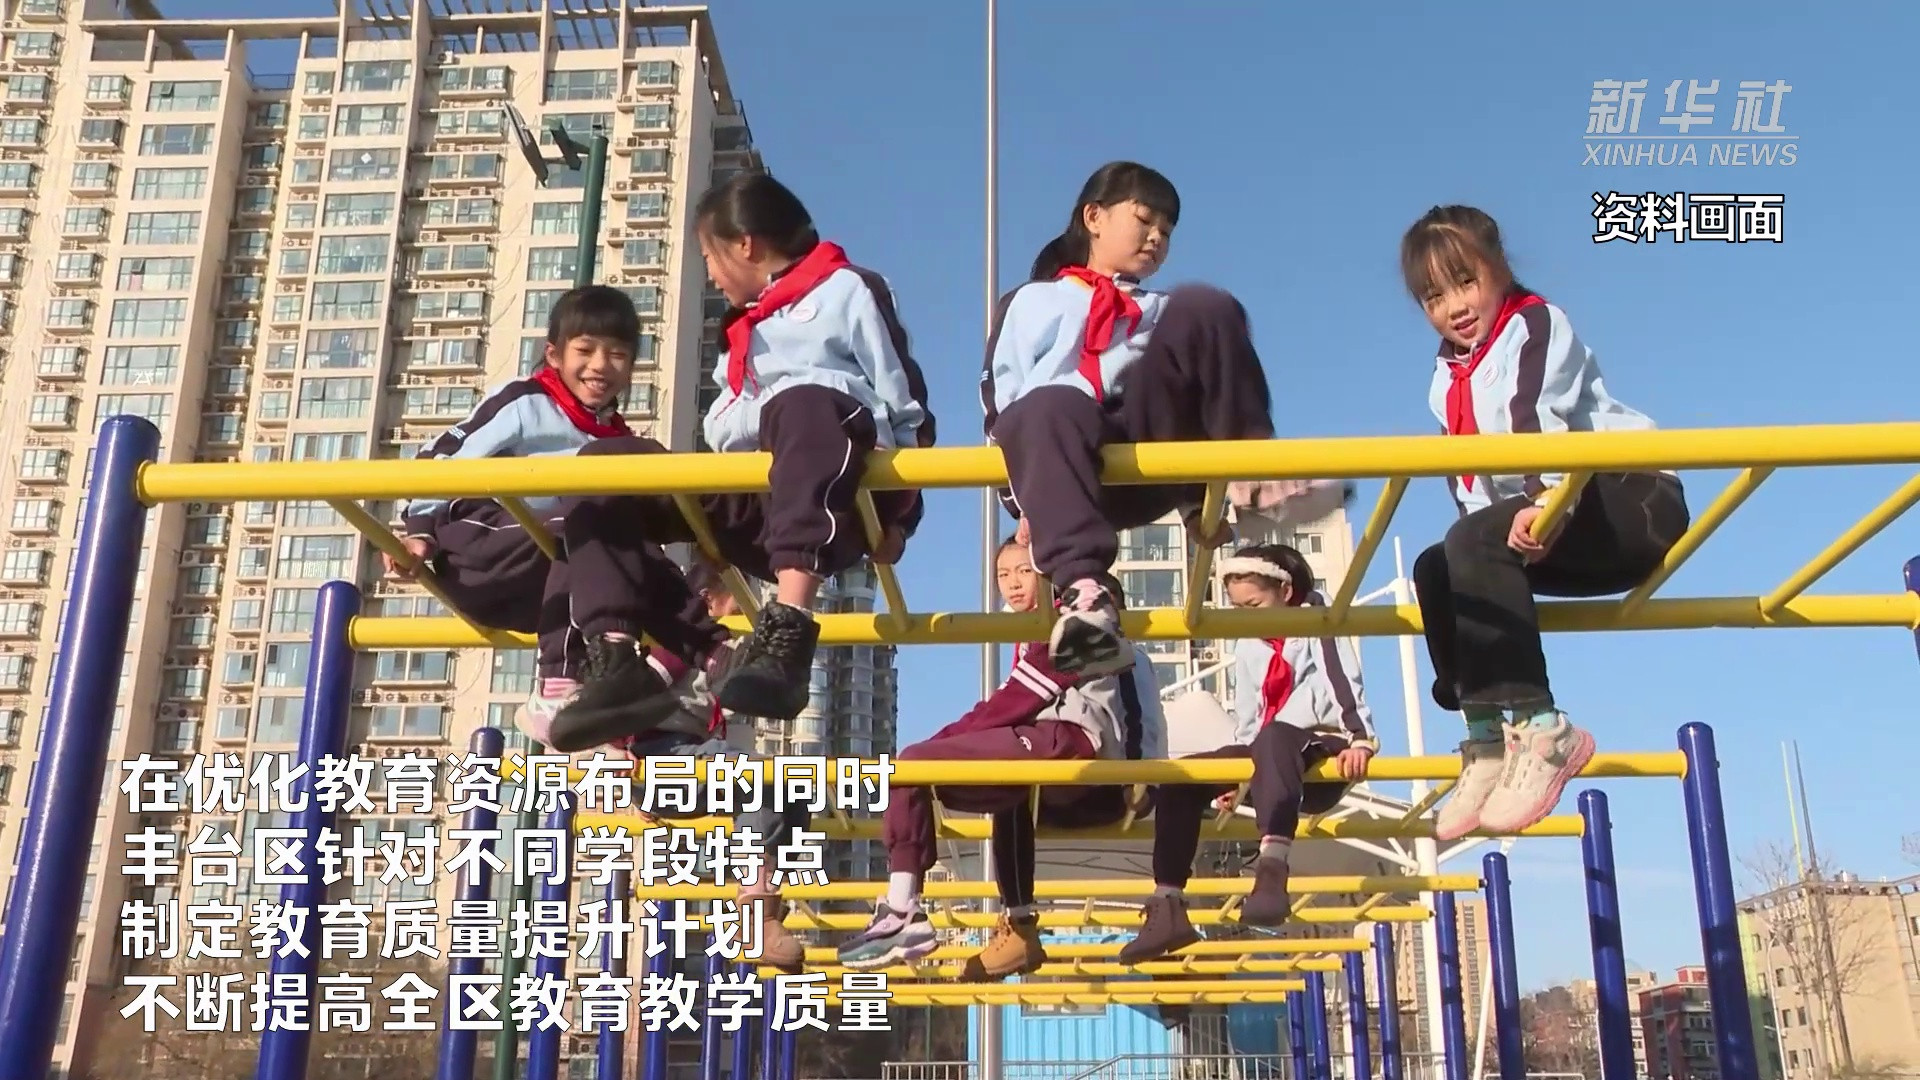 北京丰台: 分学段制定教育质量提升计划